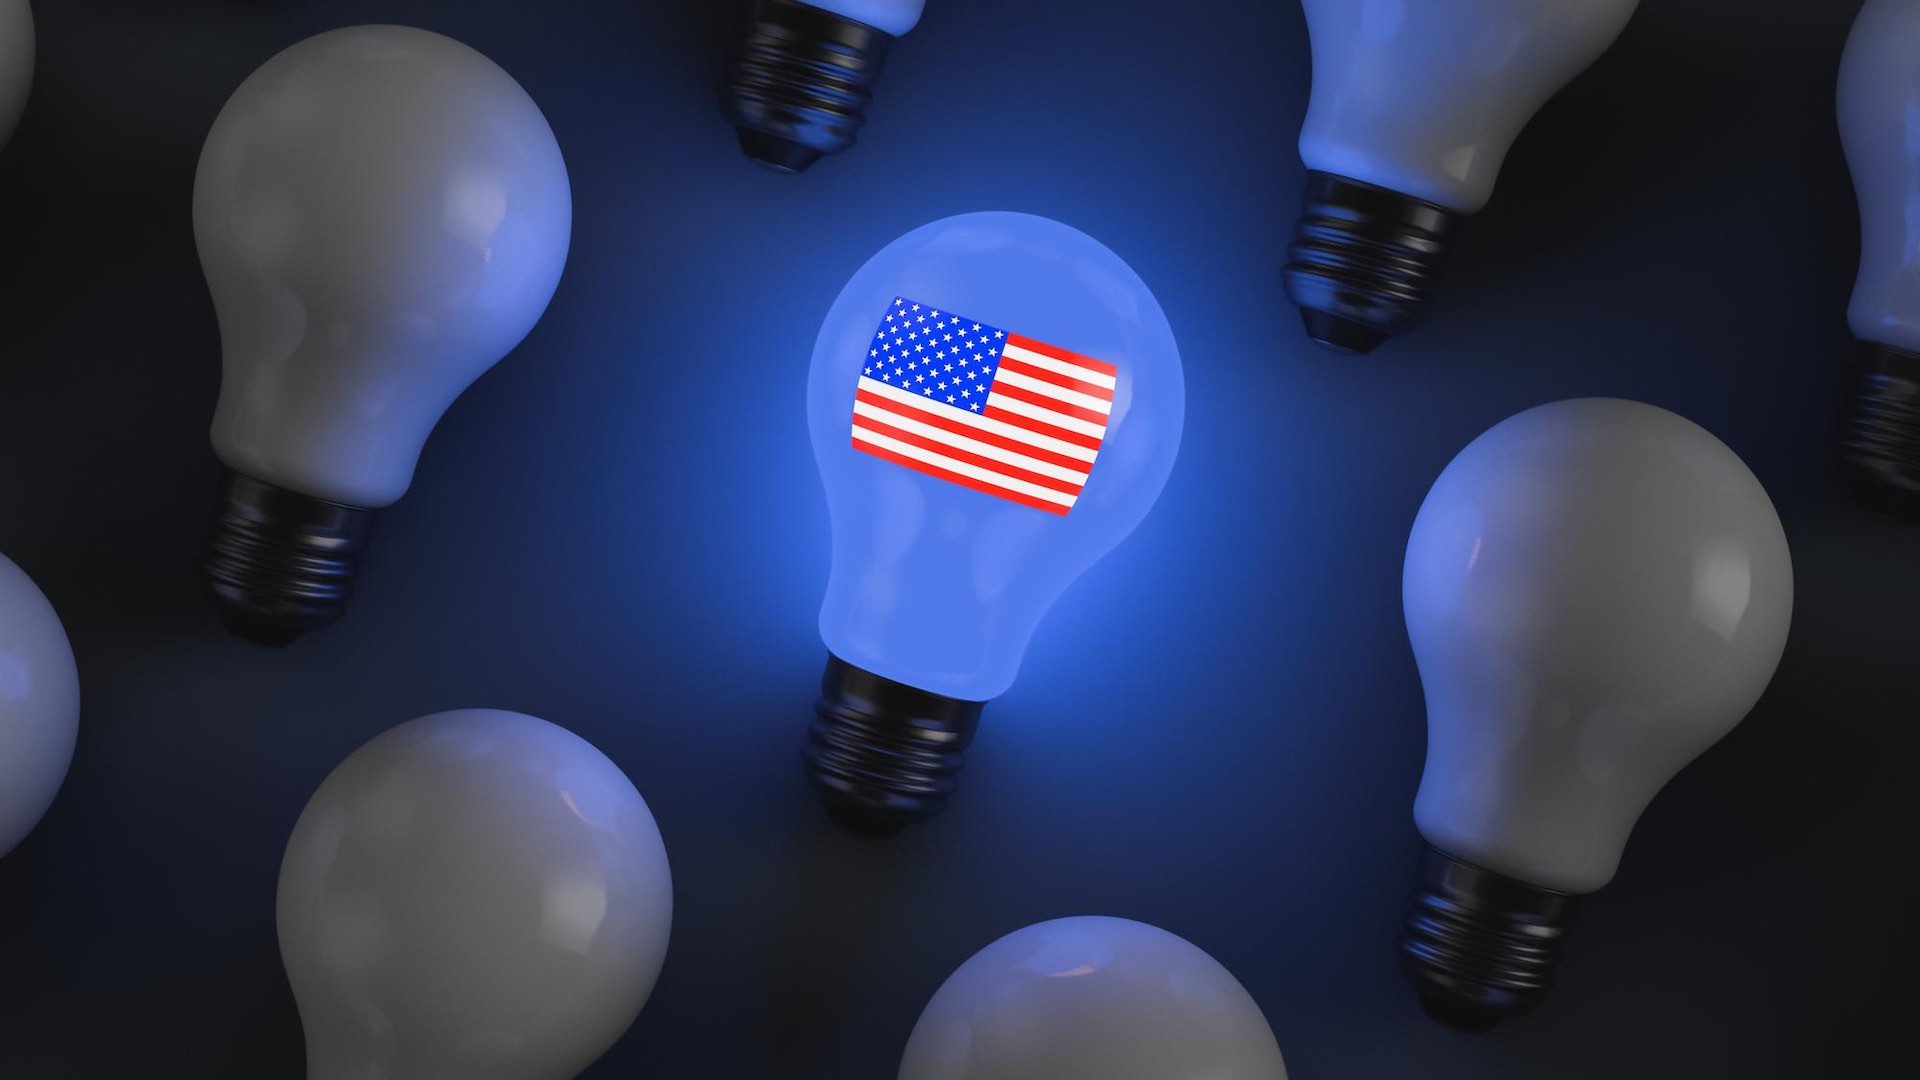 अमेरिका ने ऊर्जा अक्षमताओं को संबोधित करते हुए 18.5 अरब डॉलर की उल्लेखनीय बचत का खुलासा किया है